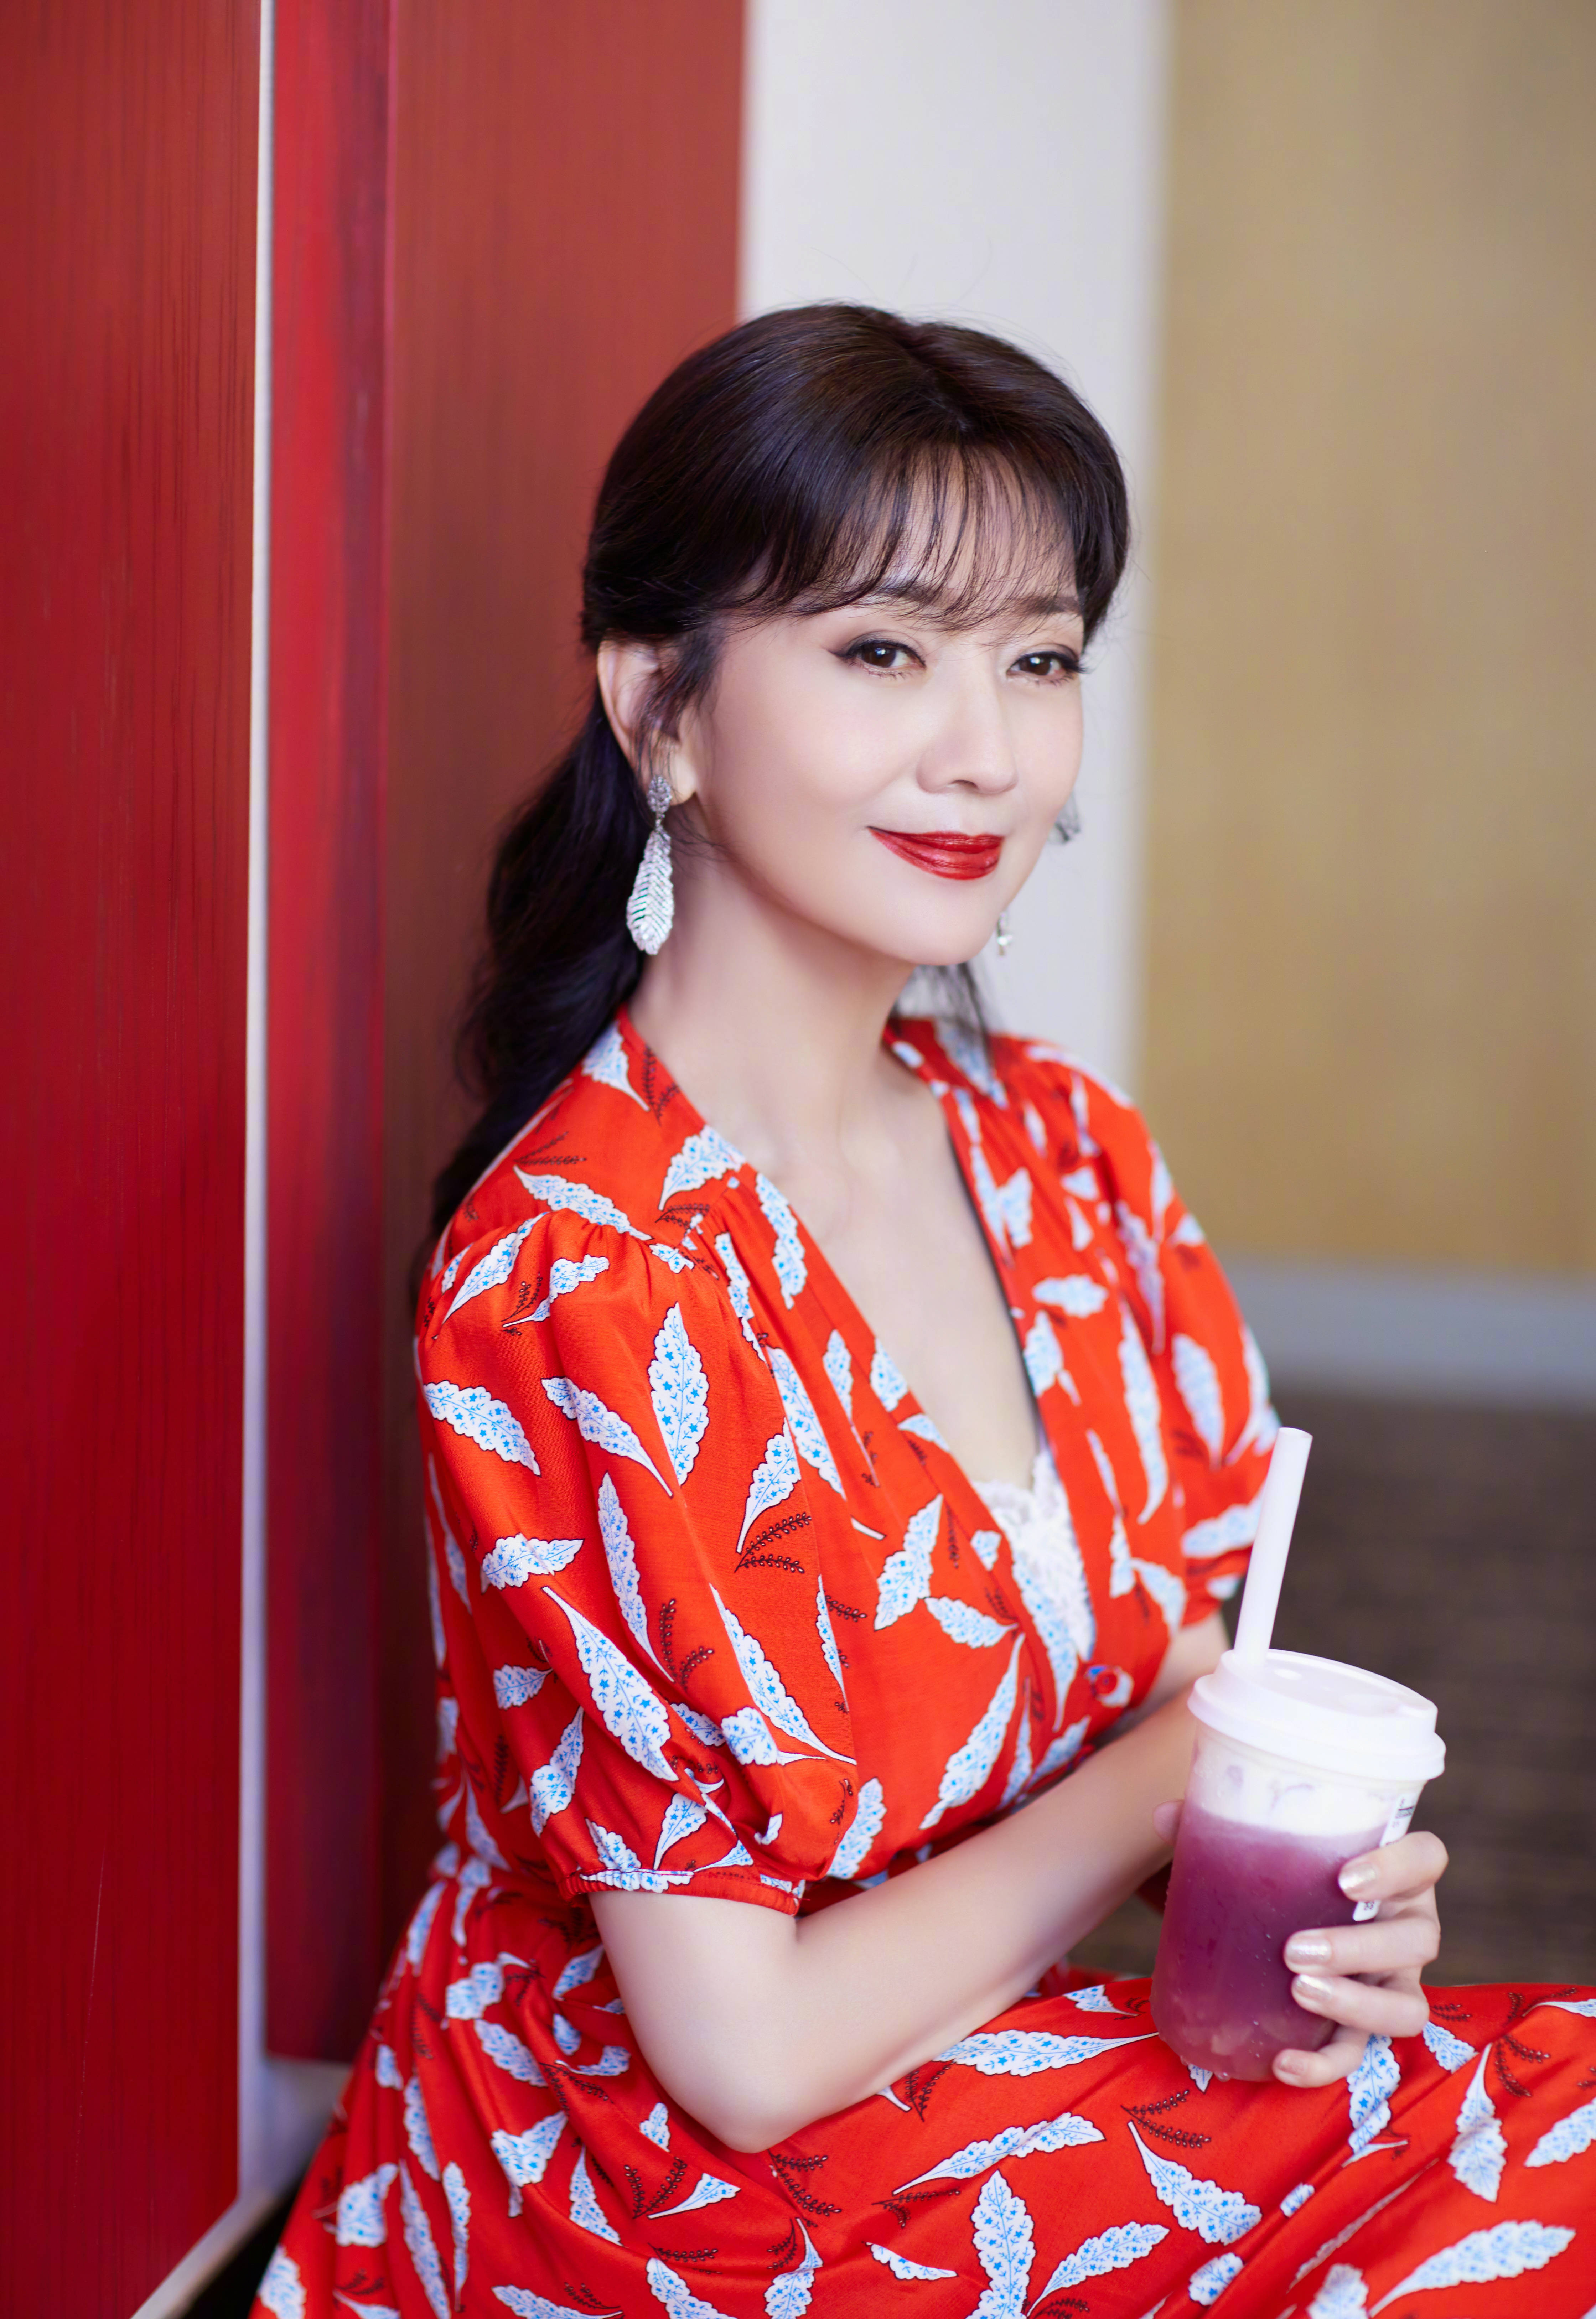 赵雅芝夏日专属氛围写真红色印花长裙美丽似烈火